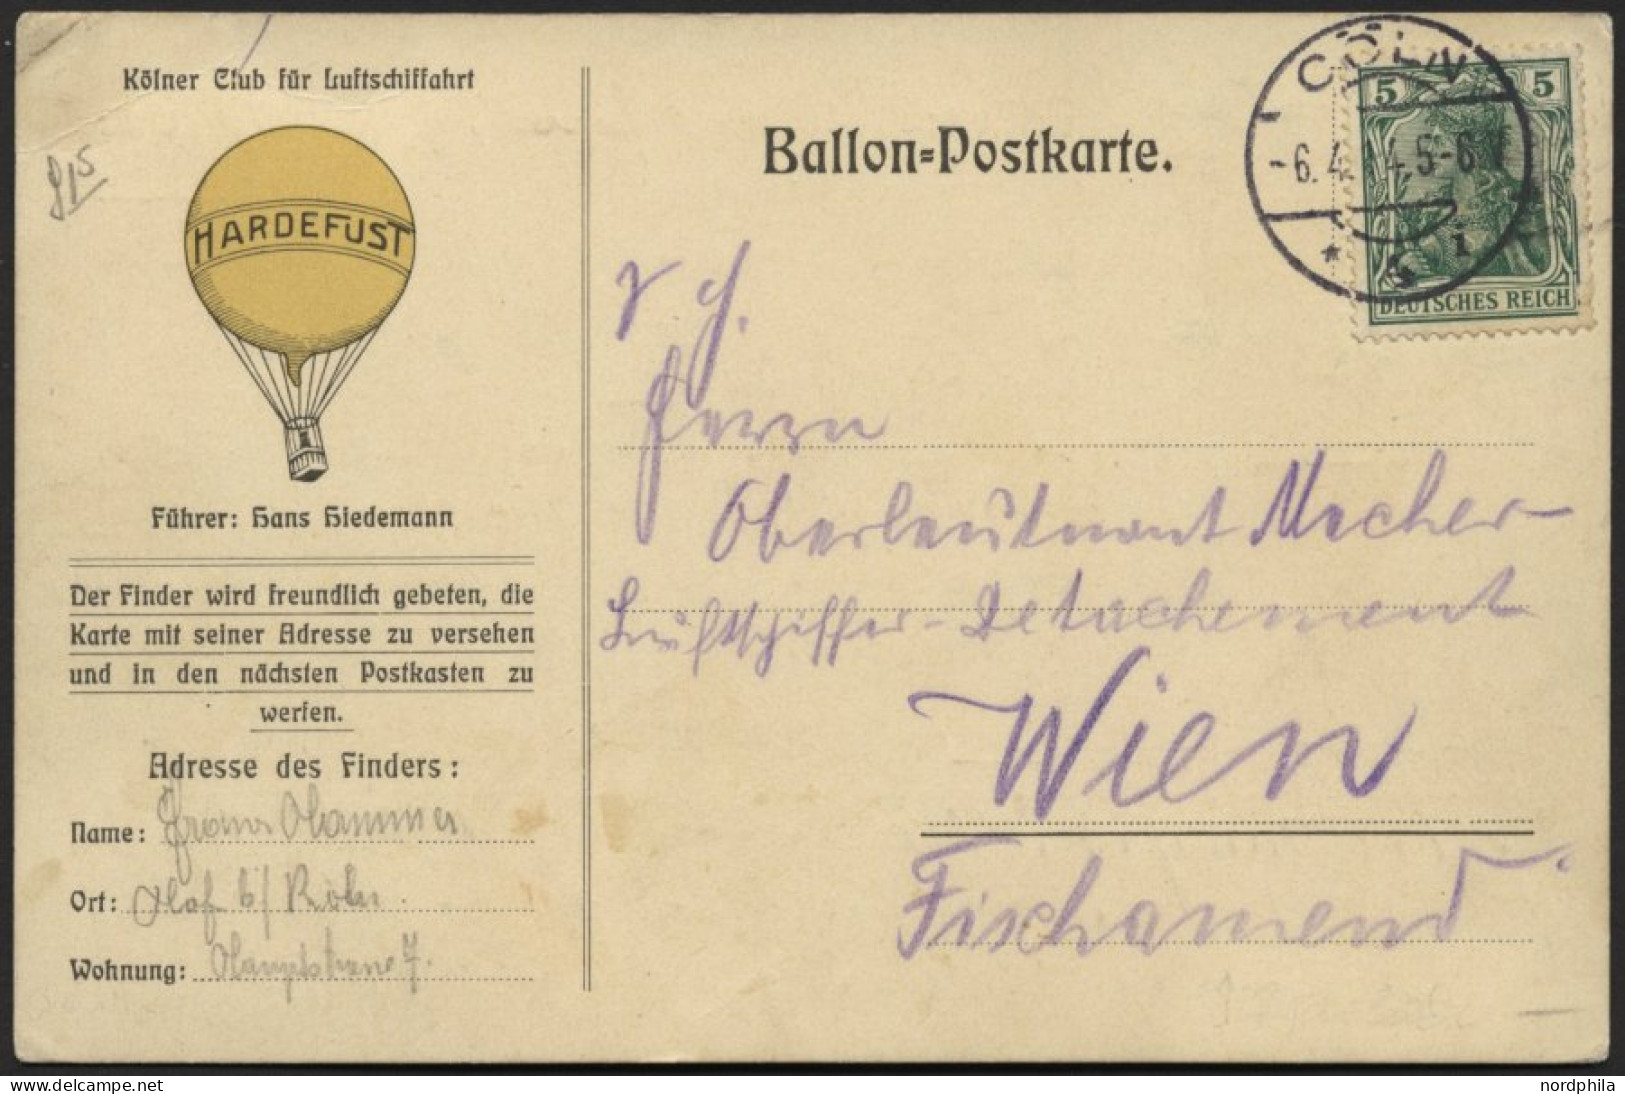 BALLON-FAHRTEN 1897-1916 5.4.1914, Kölner Club Für Luftschiffahrt, Abwurf Vom Ballon HARDEFUST, Postaufgabe In Cöln Am 6 - Fesselballons